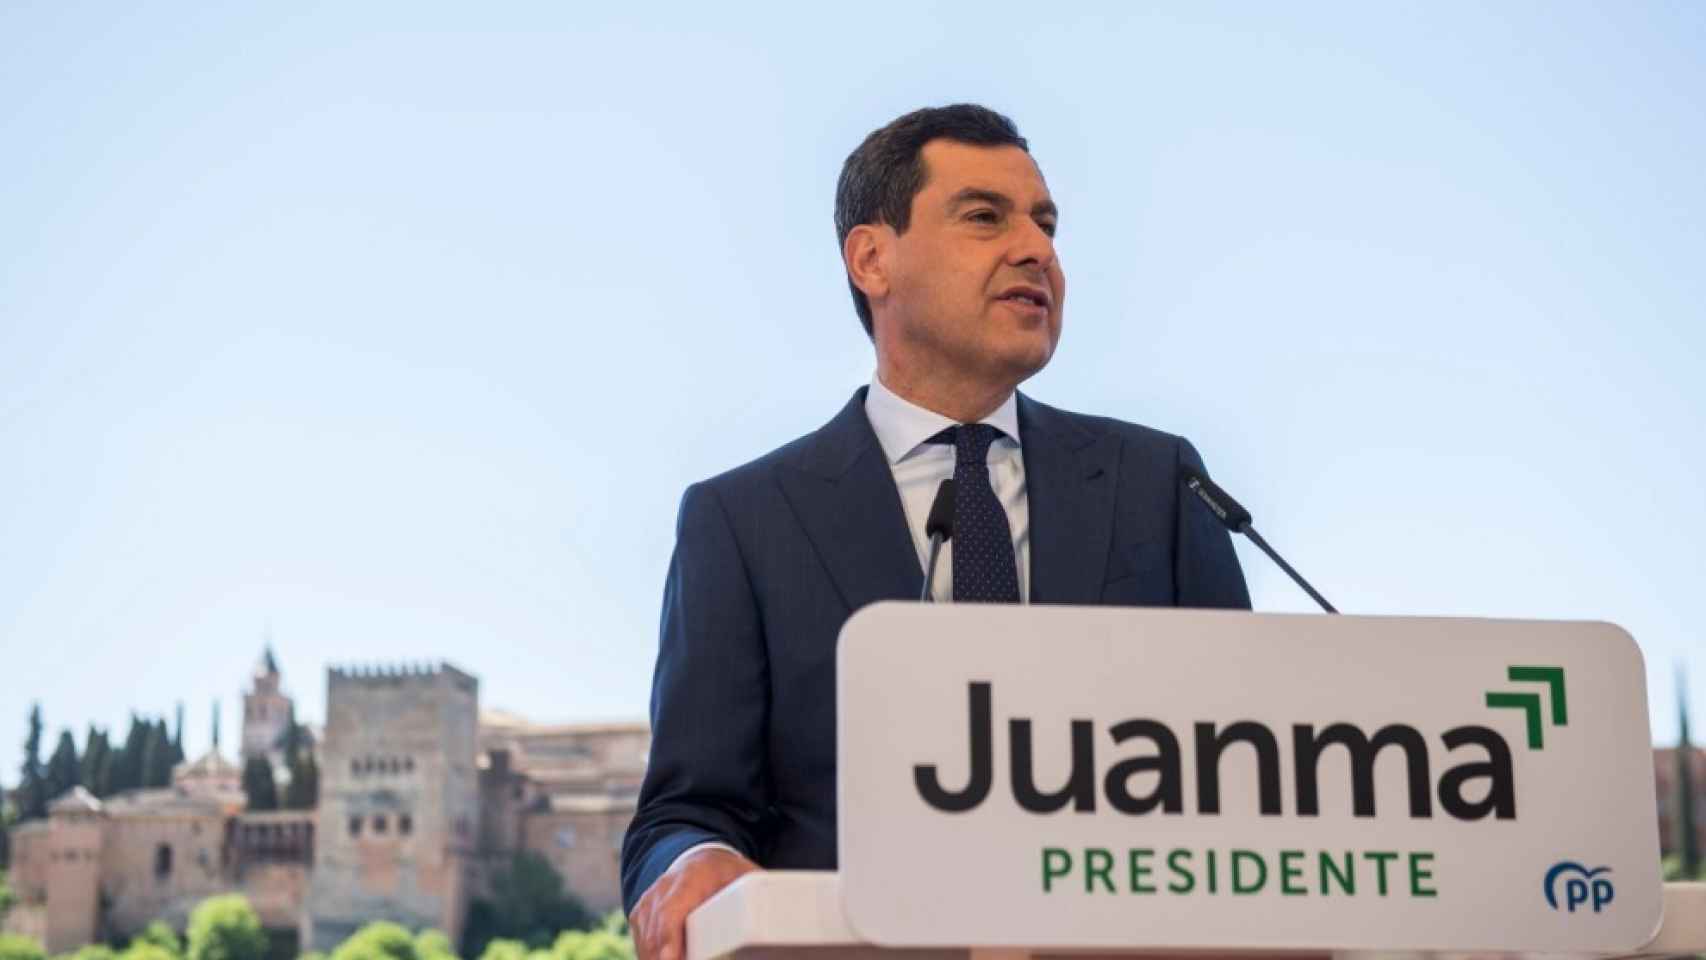 El candidato del PP, Juanma Moreno, tras un atril con su nombre, en una imagen de archivo.